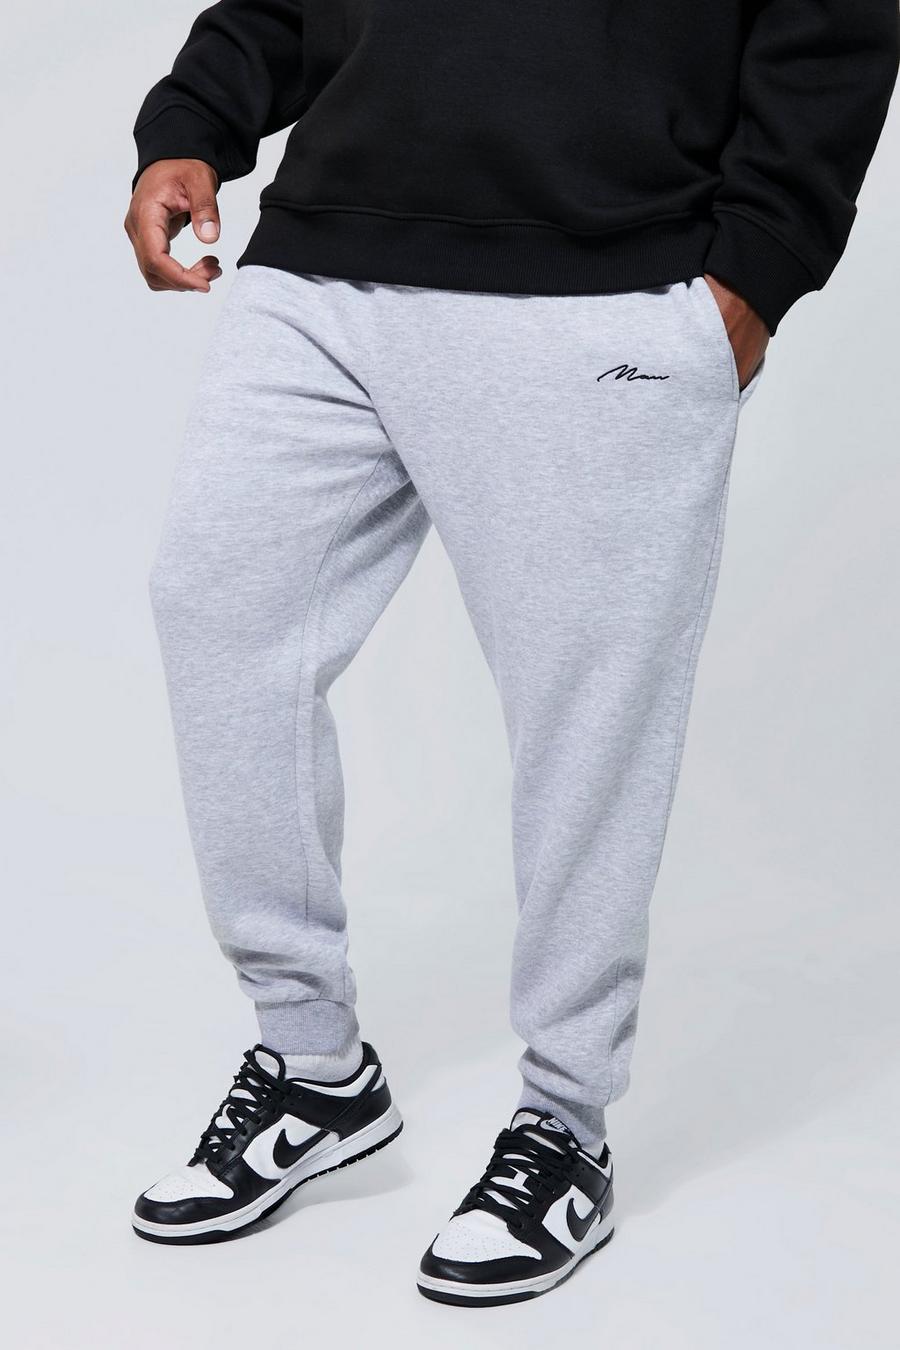 Pantalón deportivo Plus básico ajustado con letras MAN, Grey marl grigio